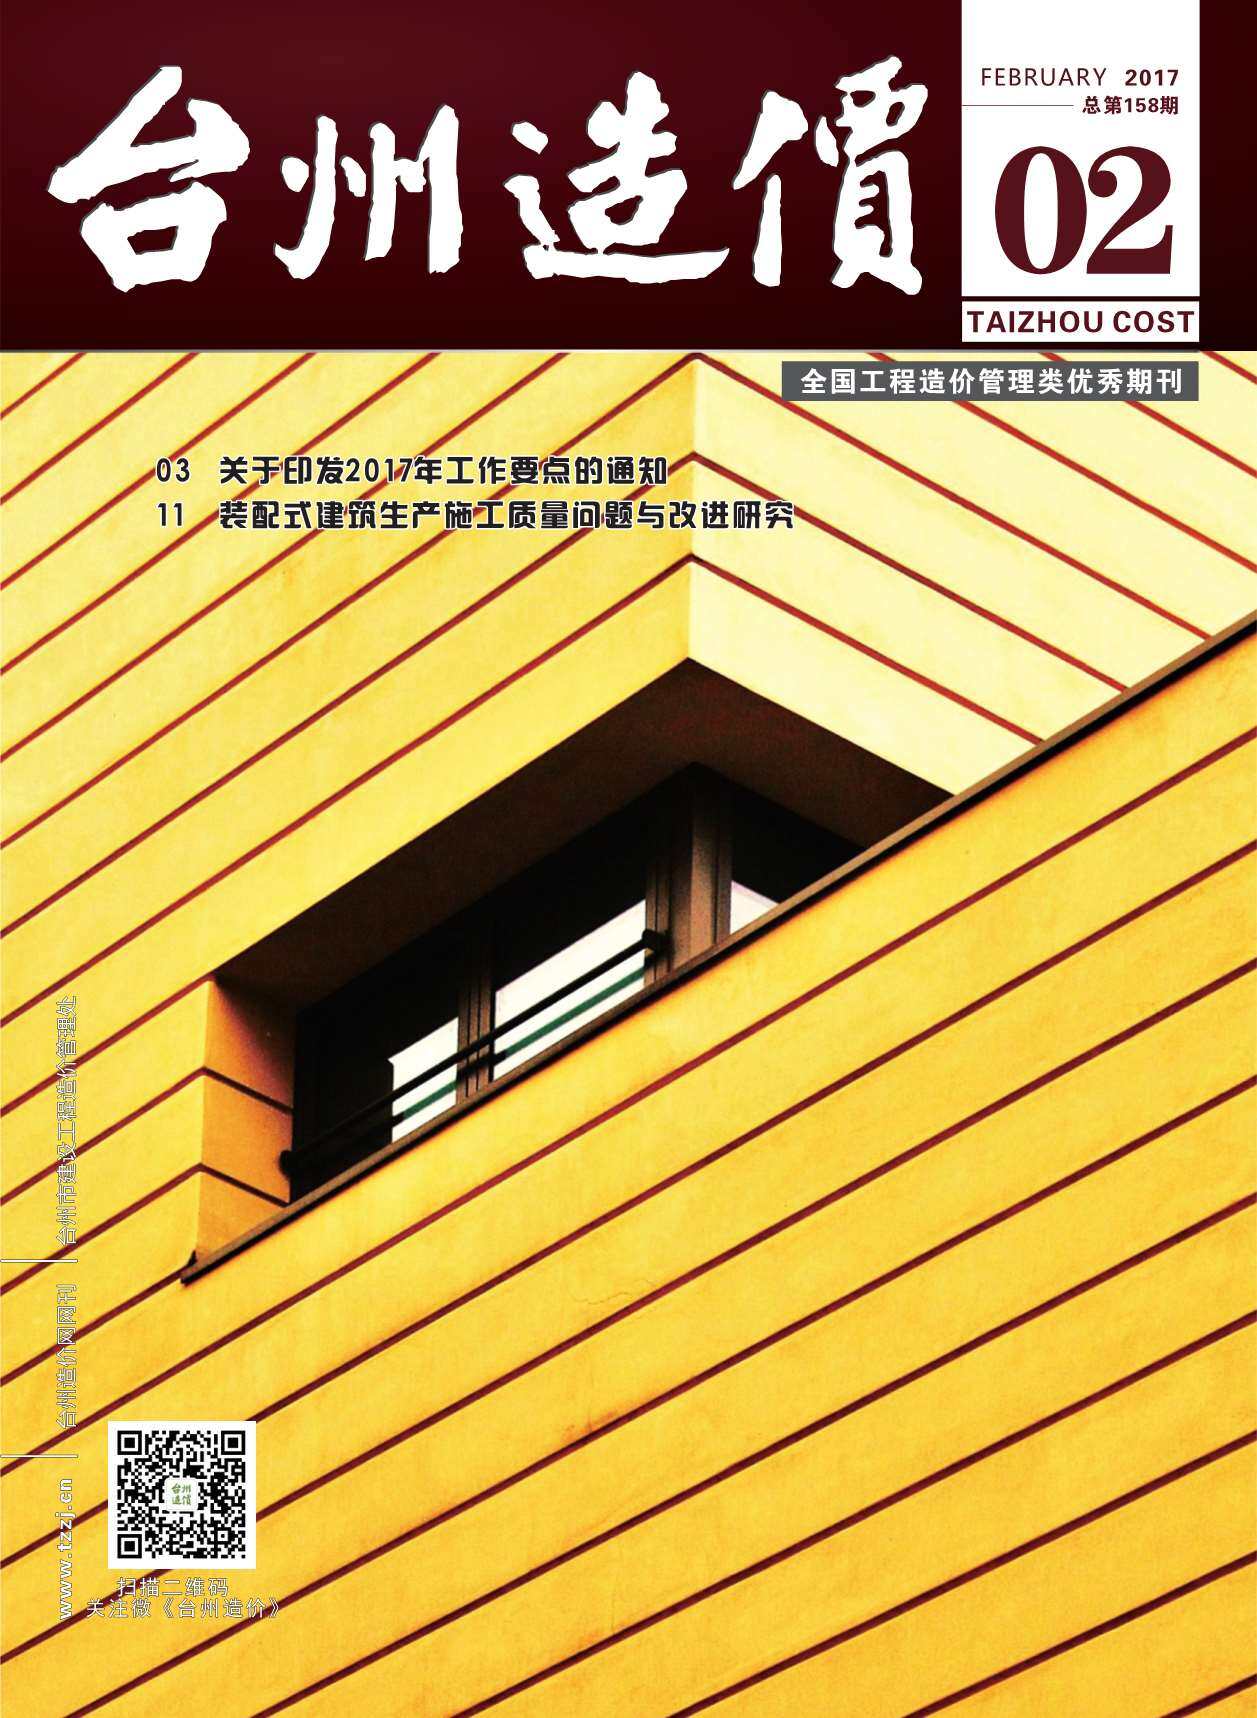 台州市2017年2月工程造价信息期刊